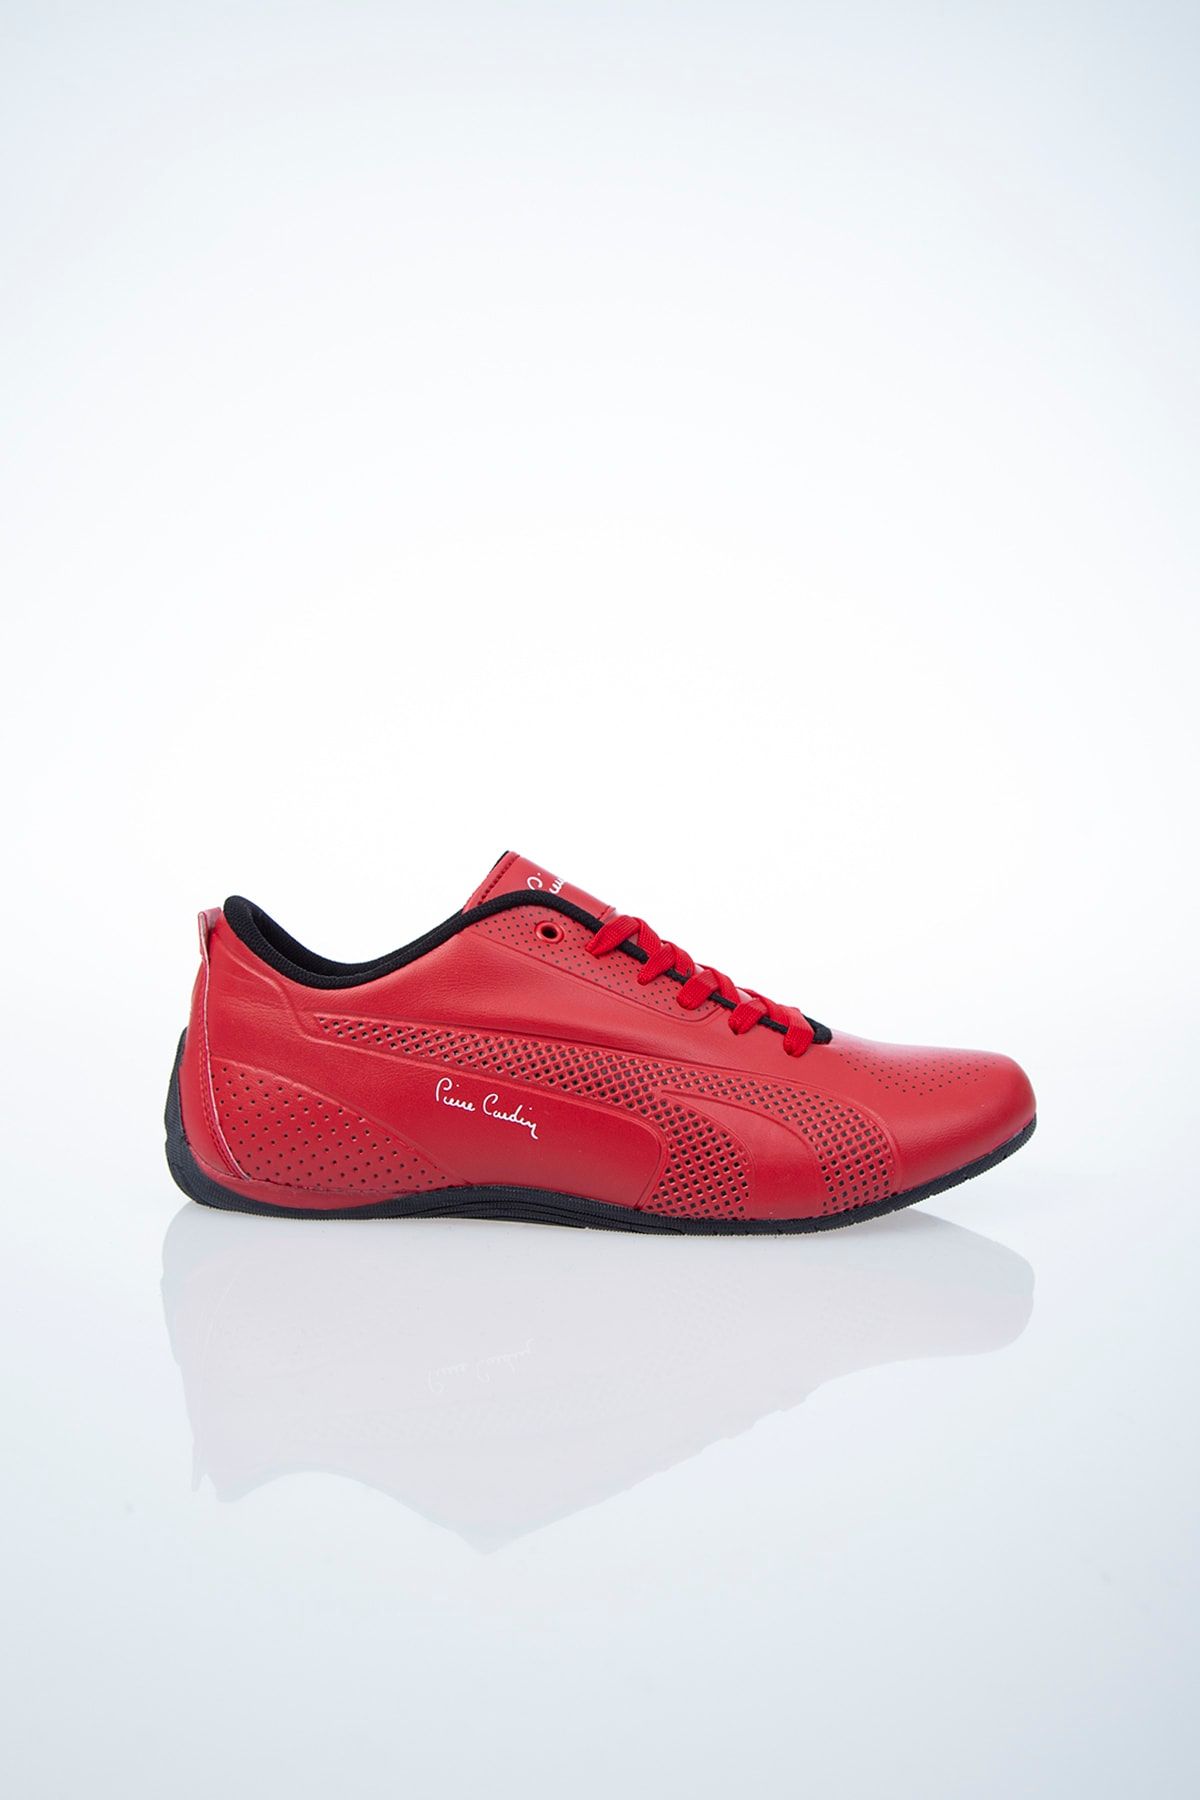 Pierre Cardin PC-30073 Kırmızı Erkek Spor Ayakkabı